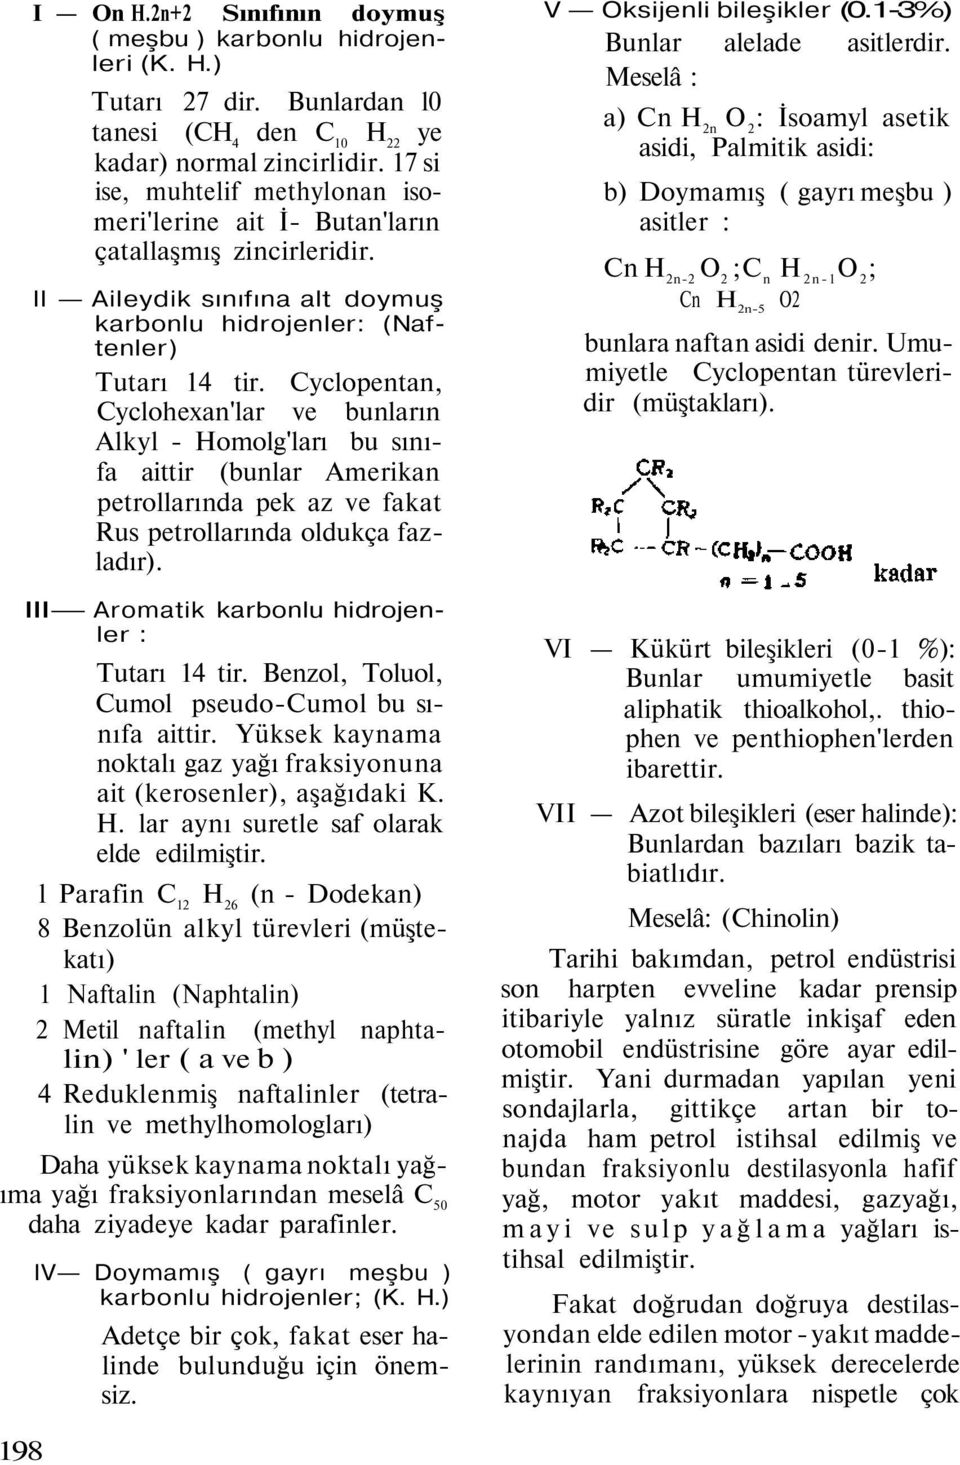 Cyclopentan, Cyclohexan'lar ve bunların Alkyl - Homolg'ları bu sınıfa aittir (bunlar Amerikan petrollarında pek az ve fakat Rus petrollarında oldukça fazladır).